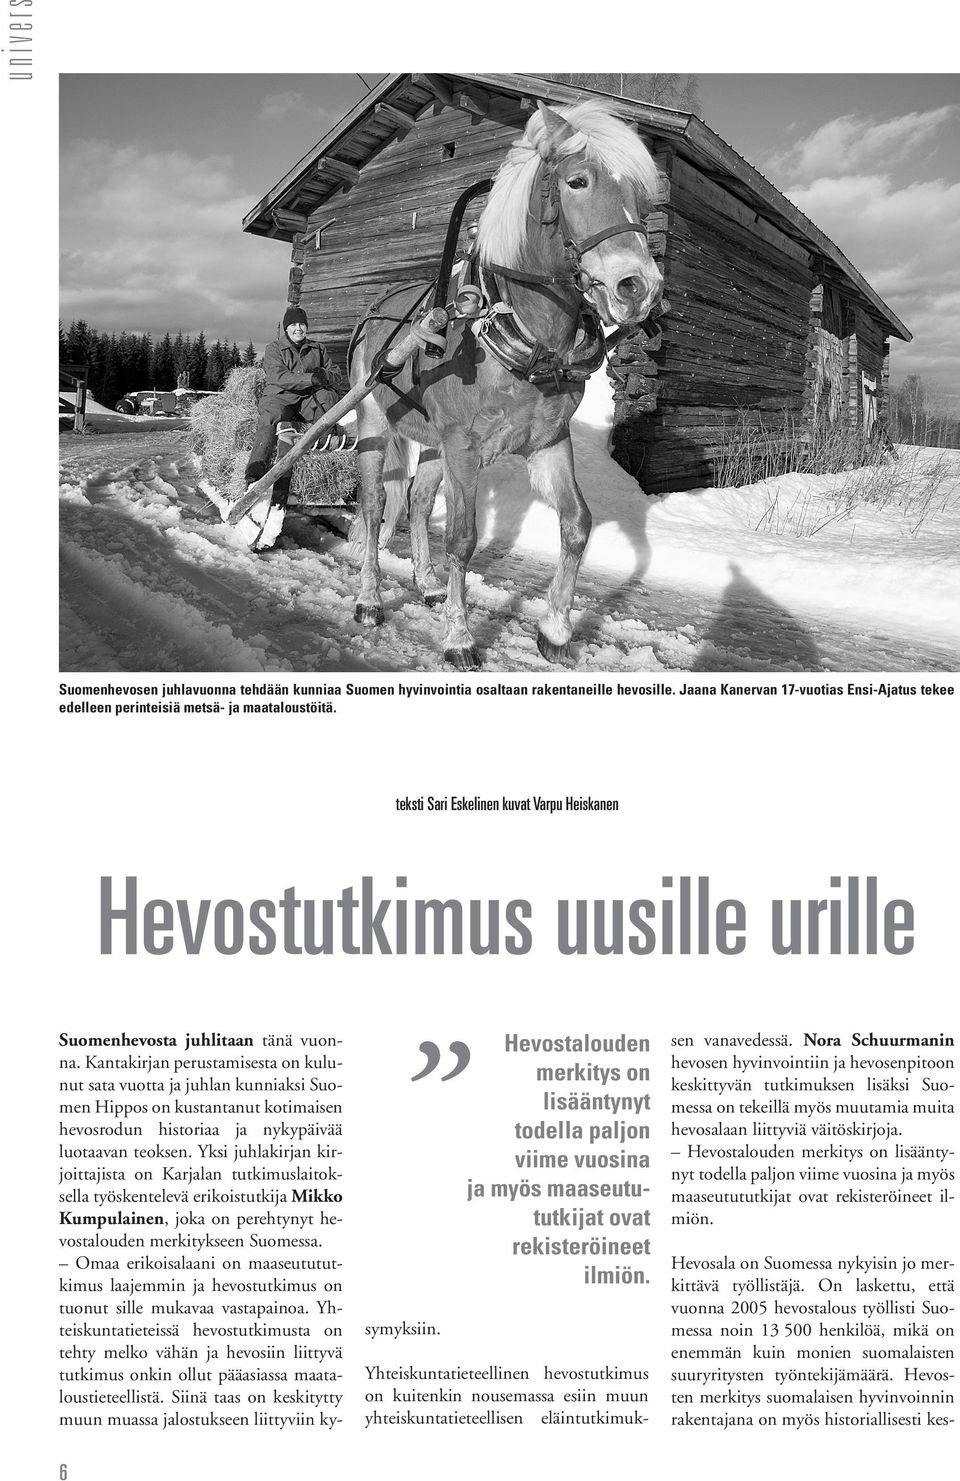 Kantakirjan perustamisesta on kulunut sata vuotta ja juhlan kunniaksi Suomen Hippos on kustantanut kotimaisen hevosrodun historiaa ja nykypäivää luotaavan teoksen.